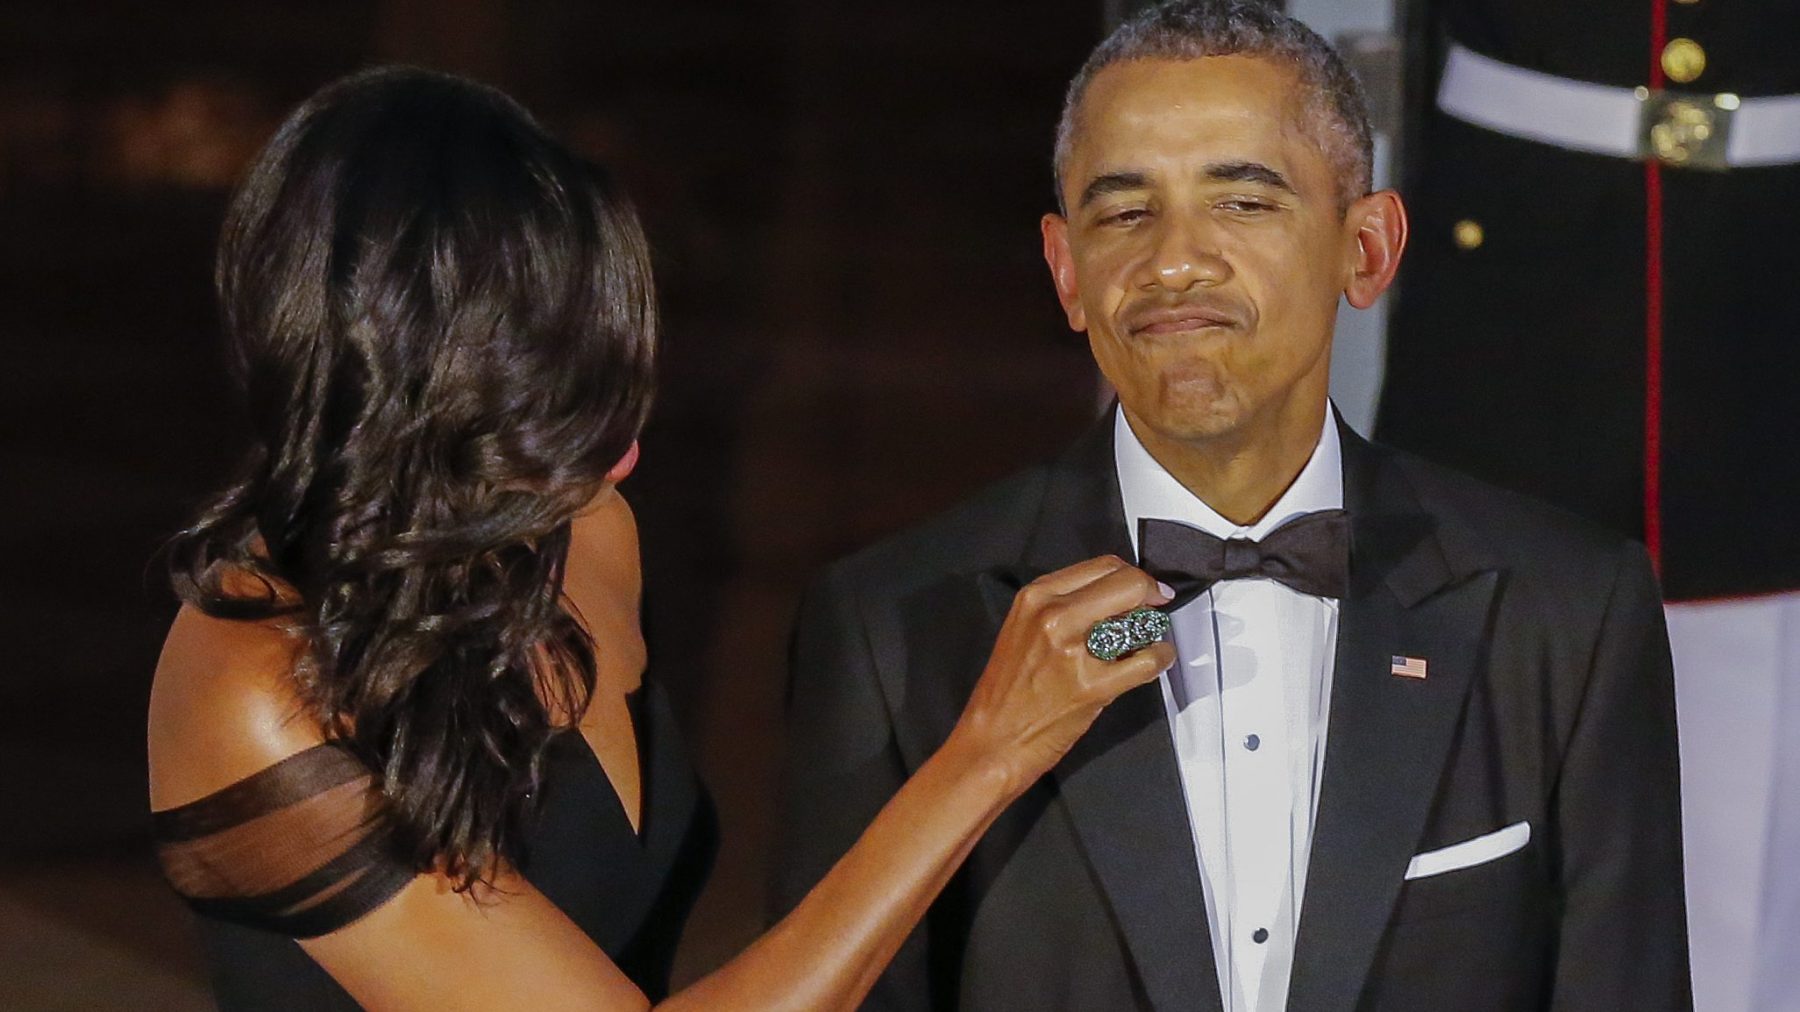 Michelle en Barack Obama